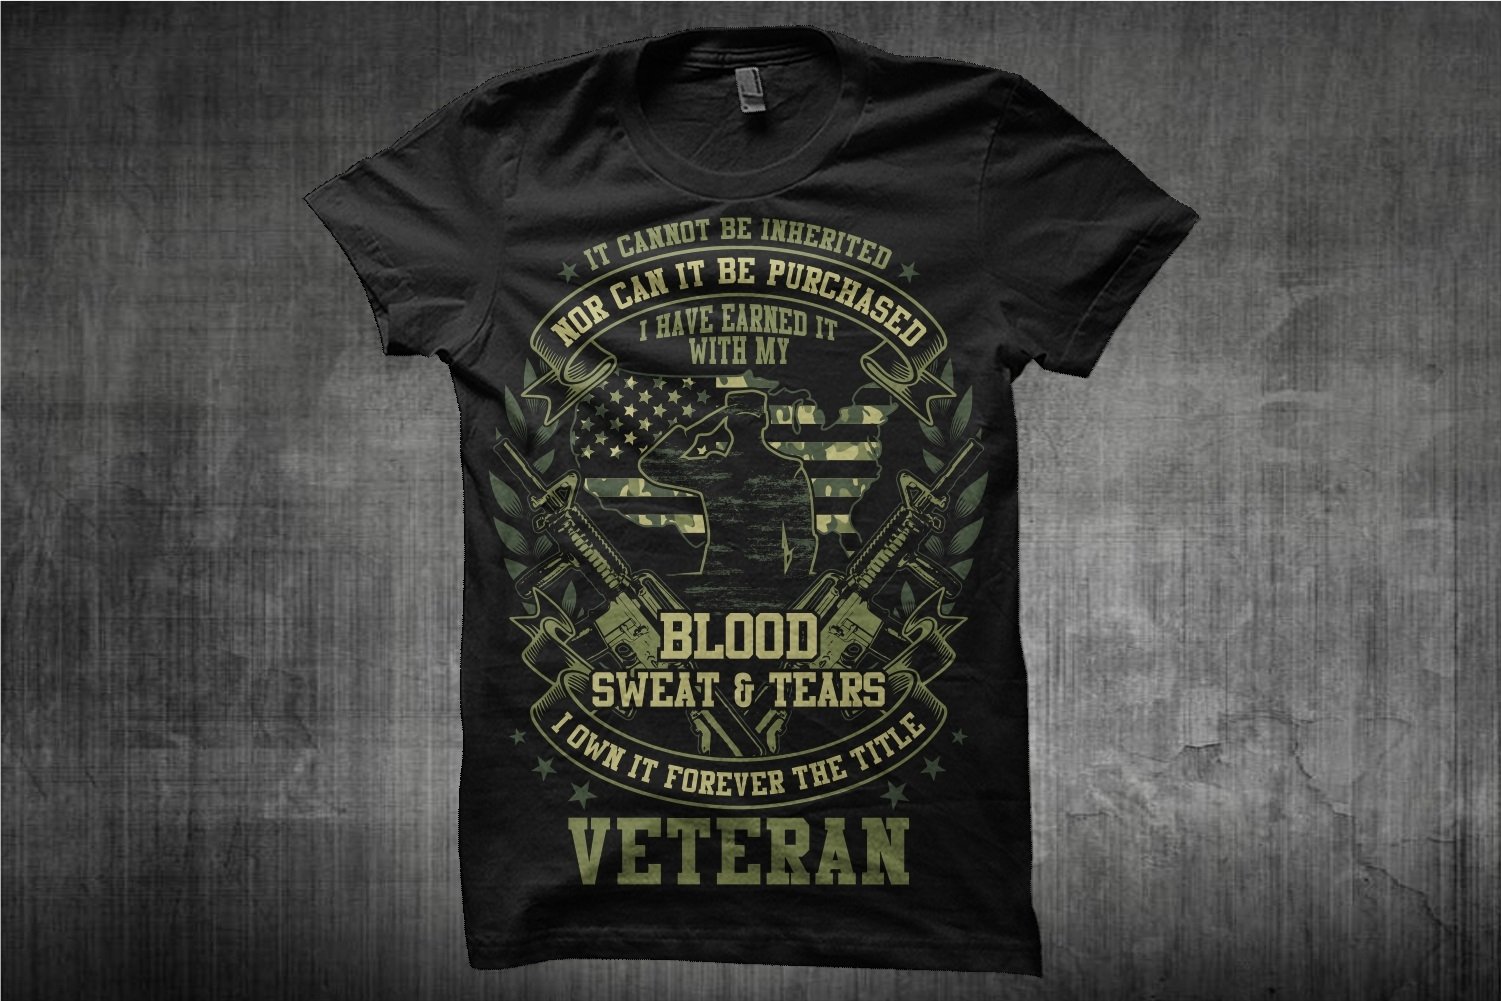 Green veteran print on a black t-shirt.